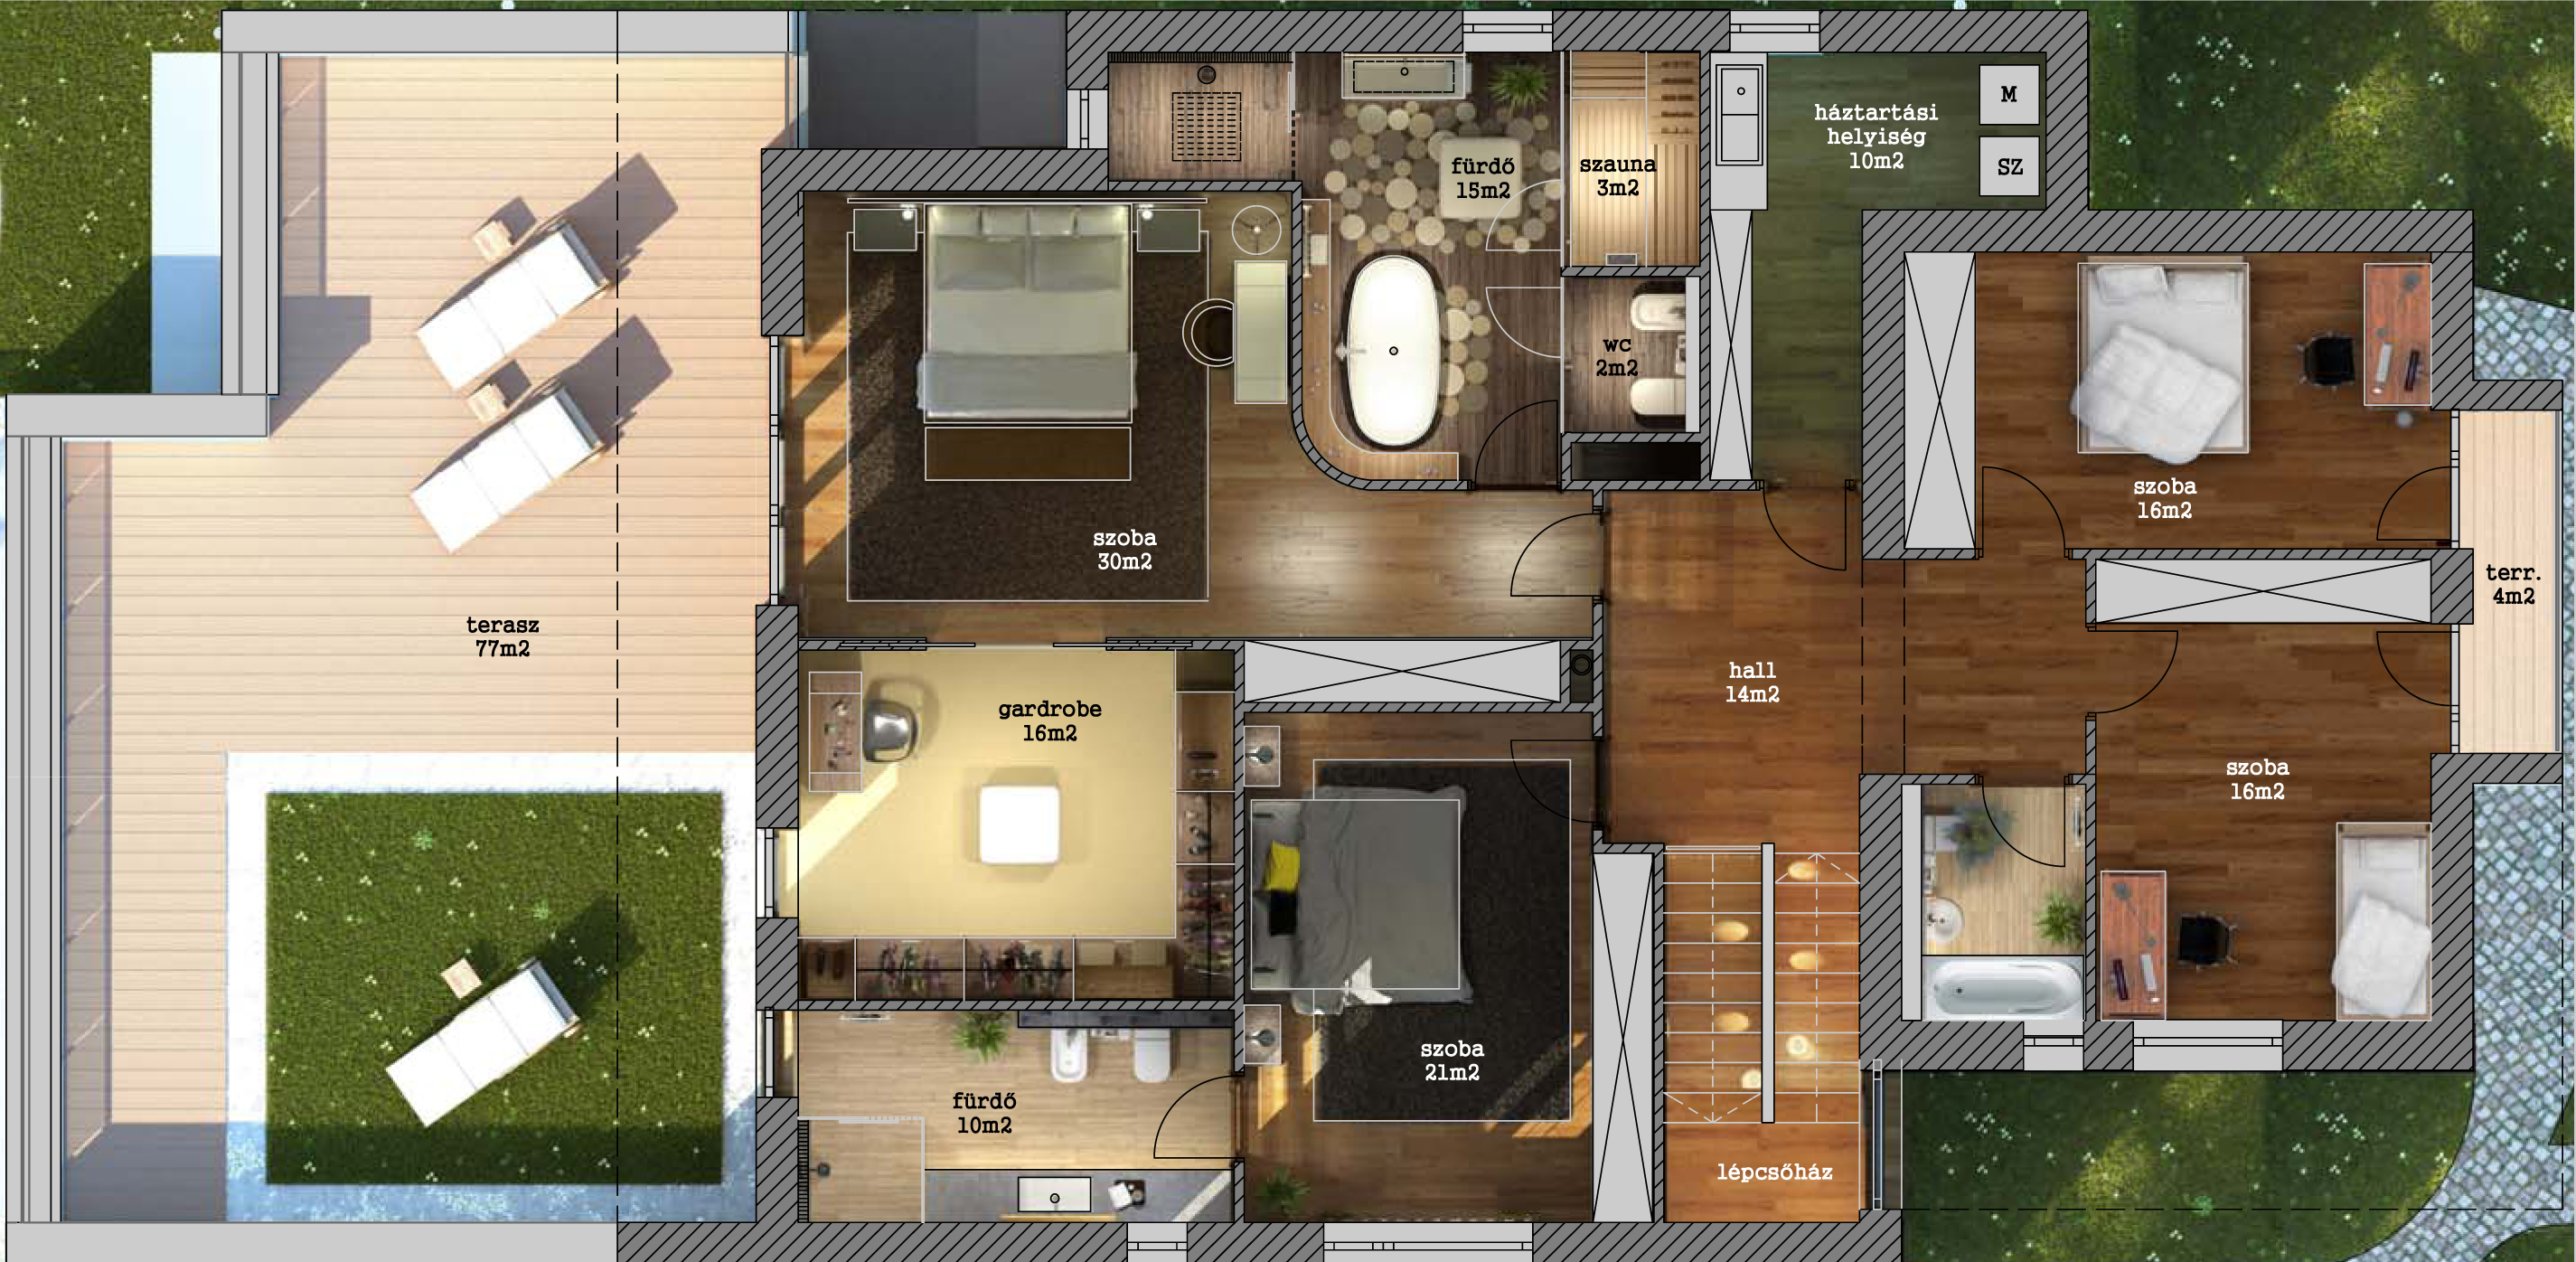 Tervezett alaprajz - emelet / 1st floor plan layout